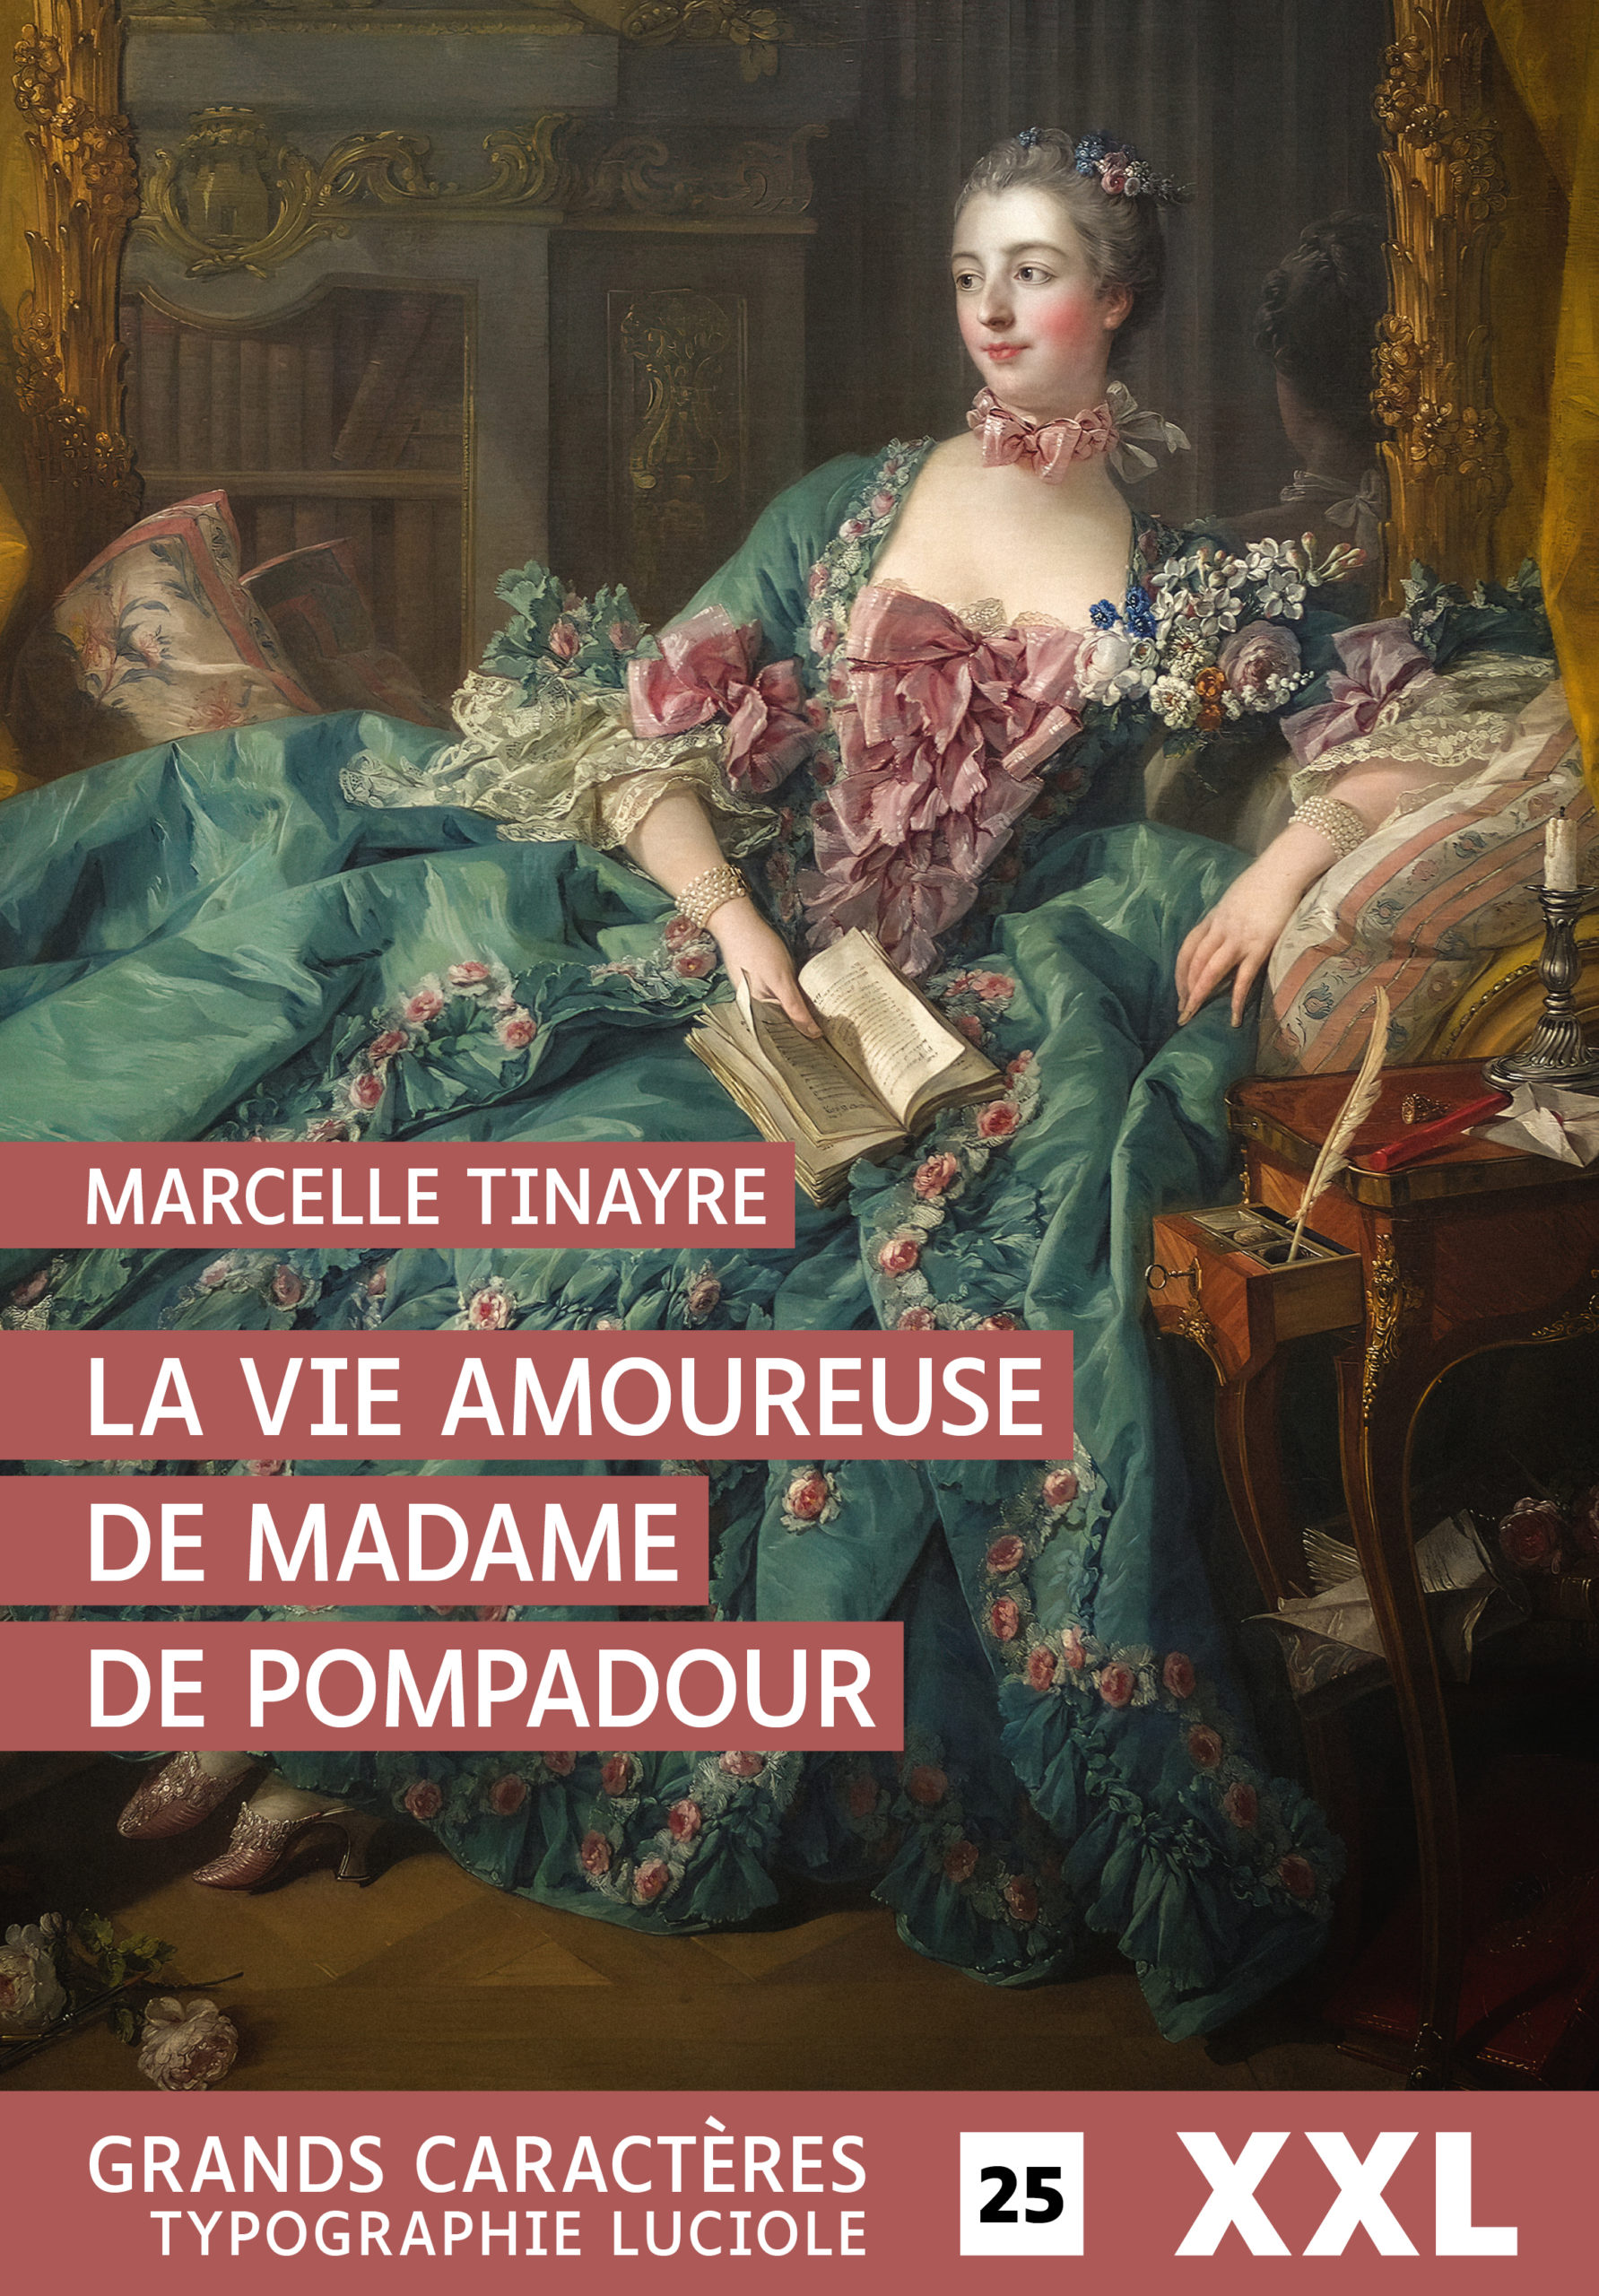 Couverture de La vie amoureuse de Madame de Pompadour de Marcelle Tinayre - Format XXL